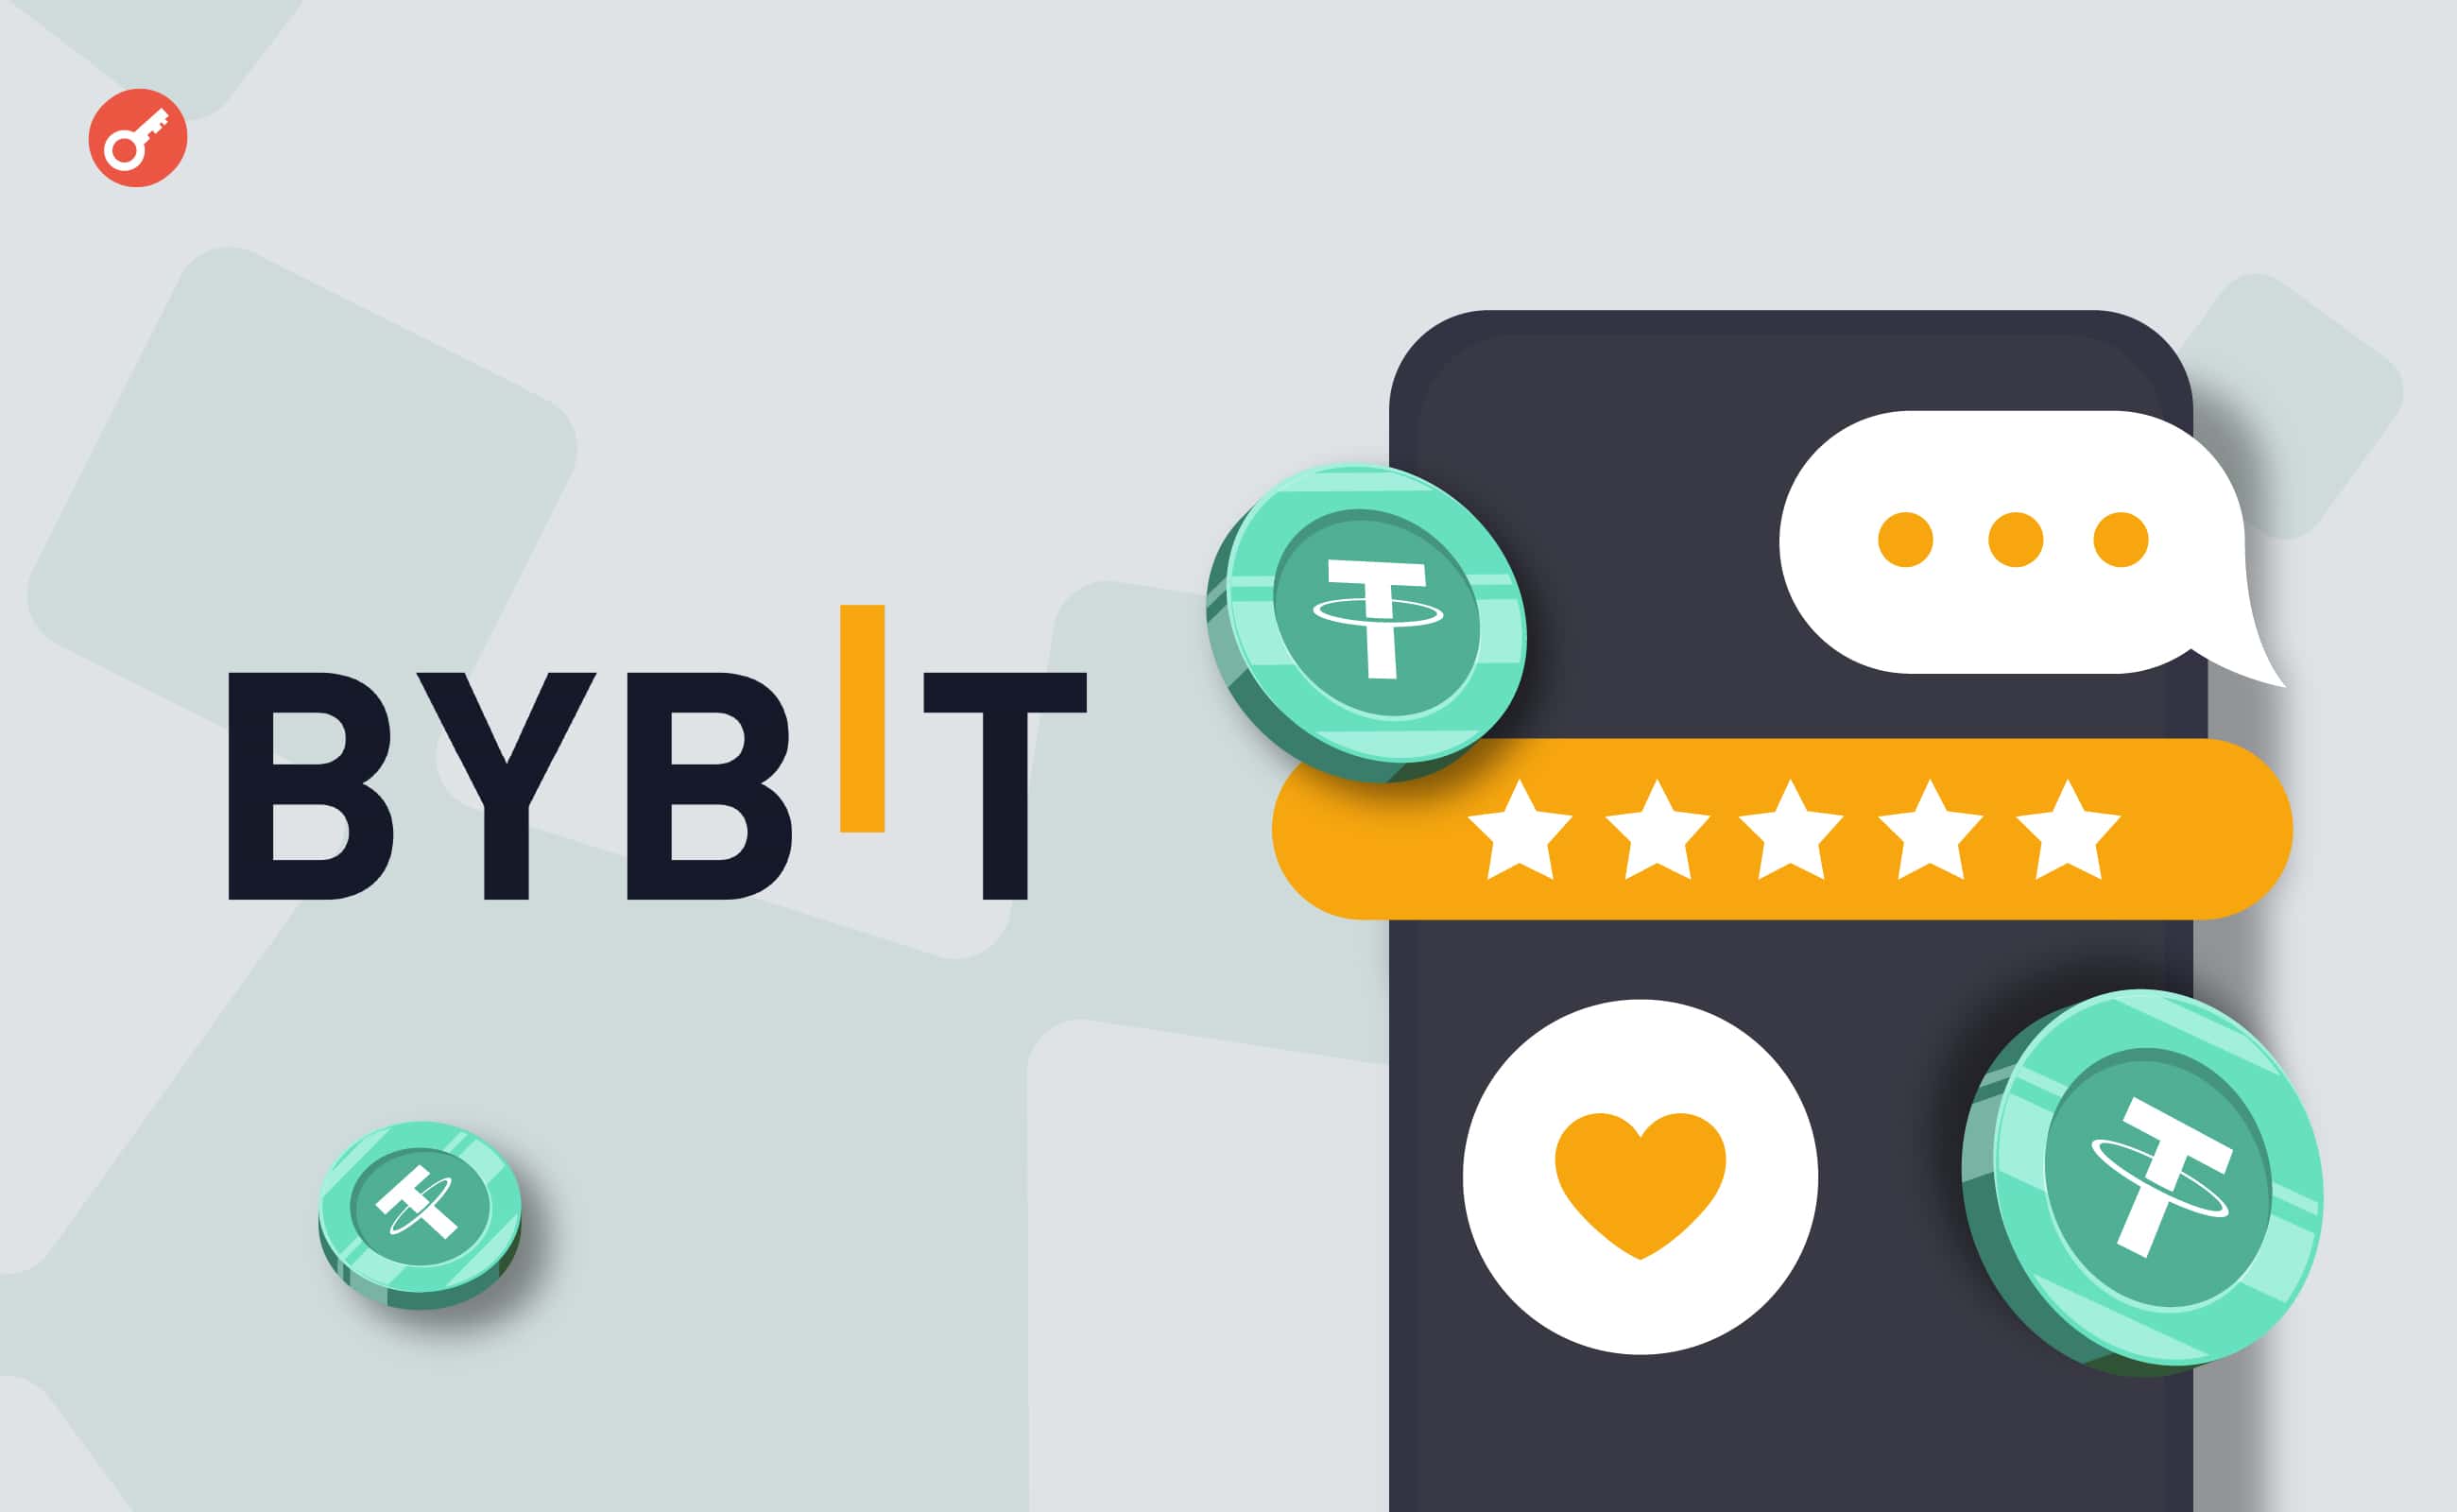 Bybit оголосила про нагороди до $9999 за відгуки про мобільний застосунок. Головний колаж новини.